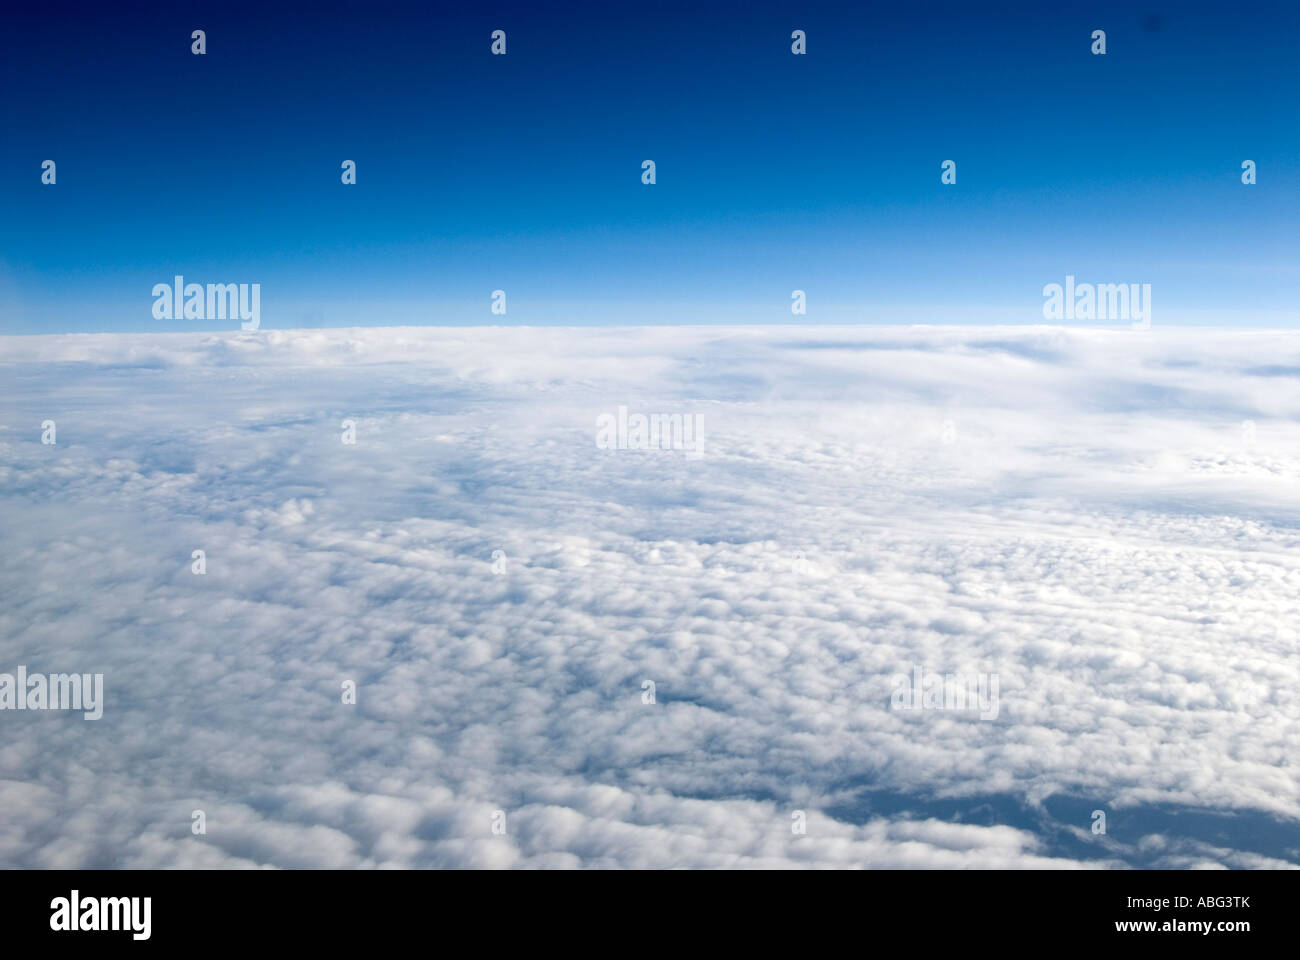 Viste tipiche che si vede quando si volare sopra le nuvole in un aereo forse in vacanza o in viaggio di lavoro Foto Stock